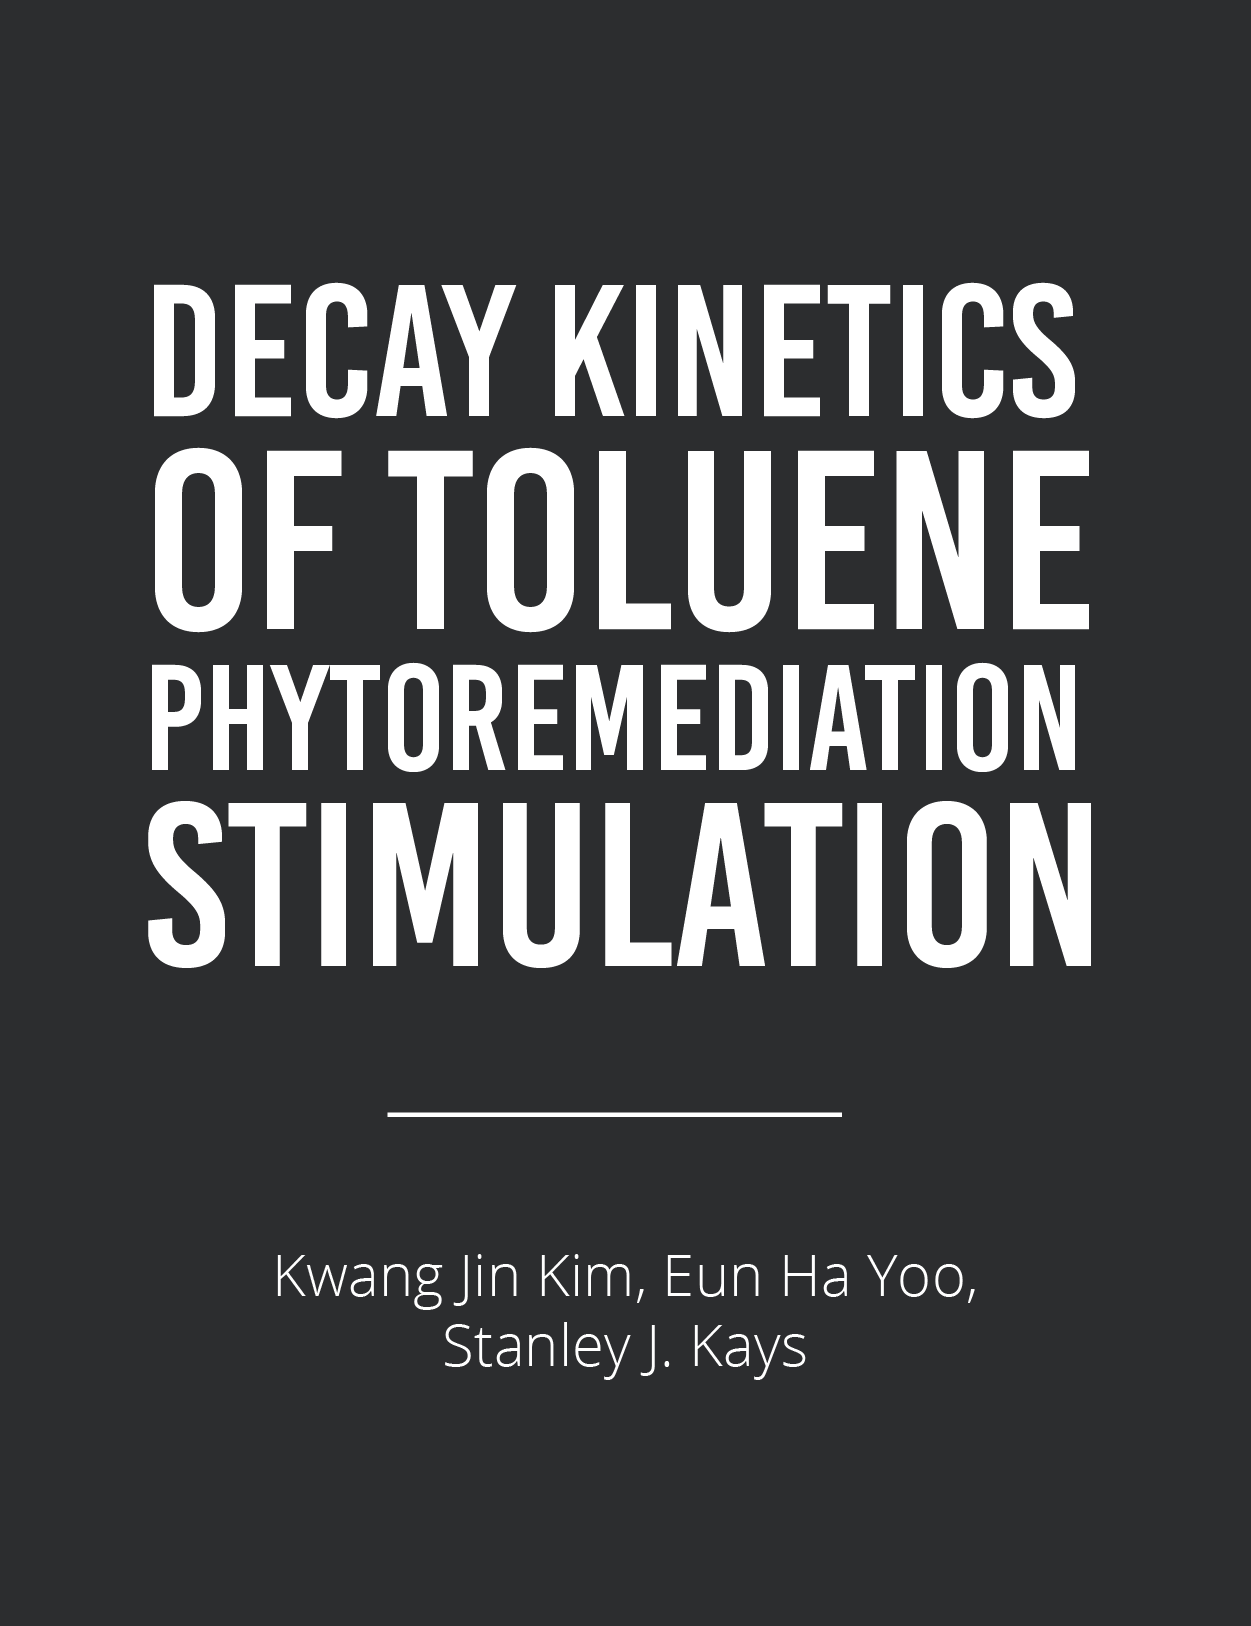 Decay Kinetics of Toluene Phytoremediation StimulationFeatured Image